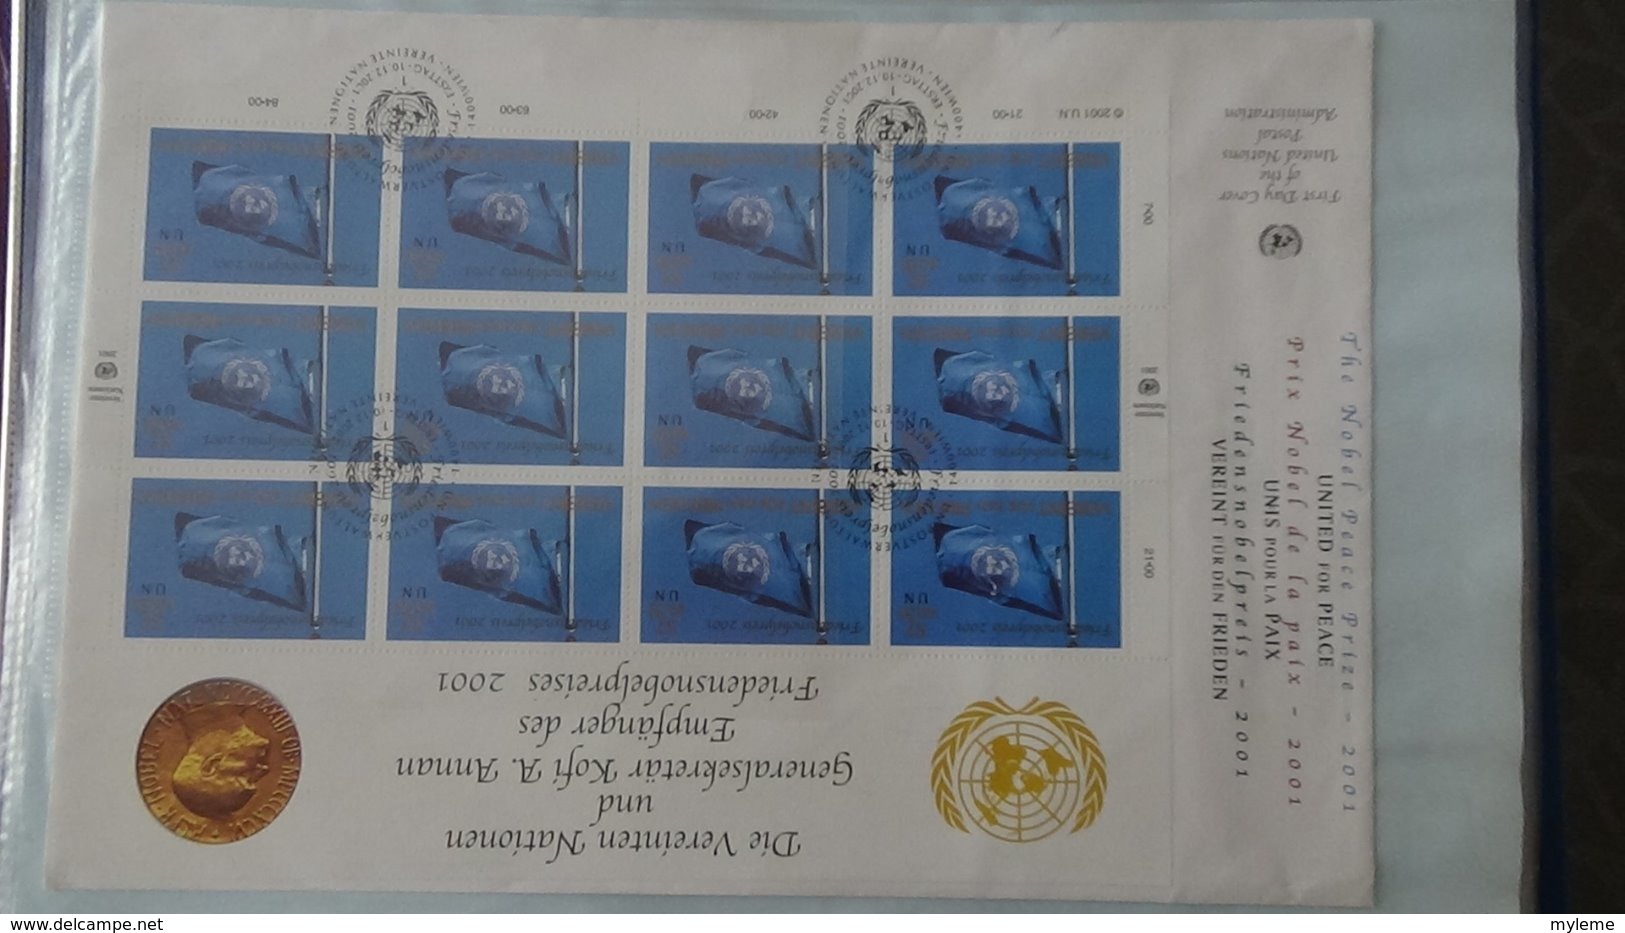 Dispersion d'une collection d'enveloppe 1er jour et autres dont 83 NATIONS UNIES de 1994 à 2013